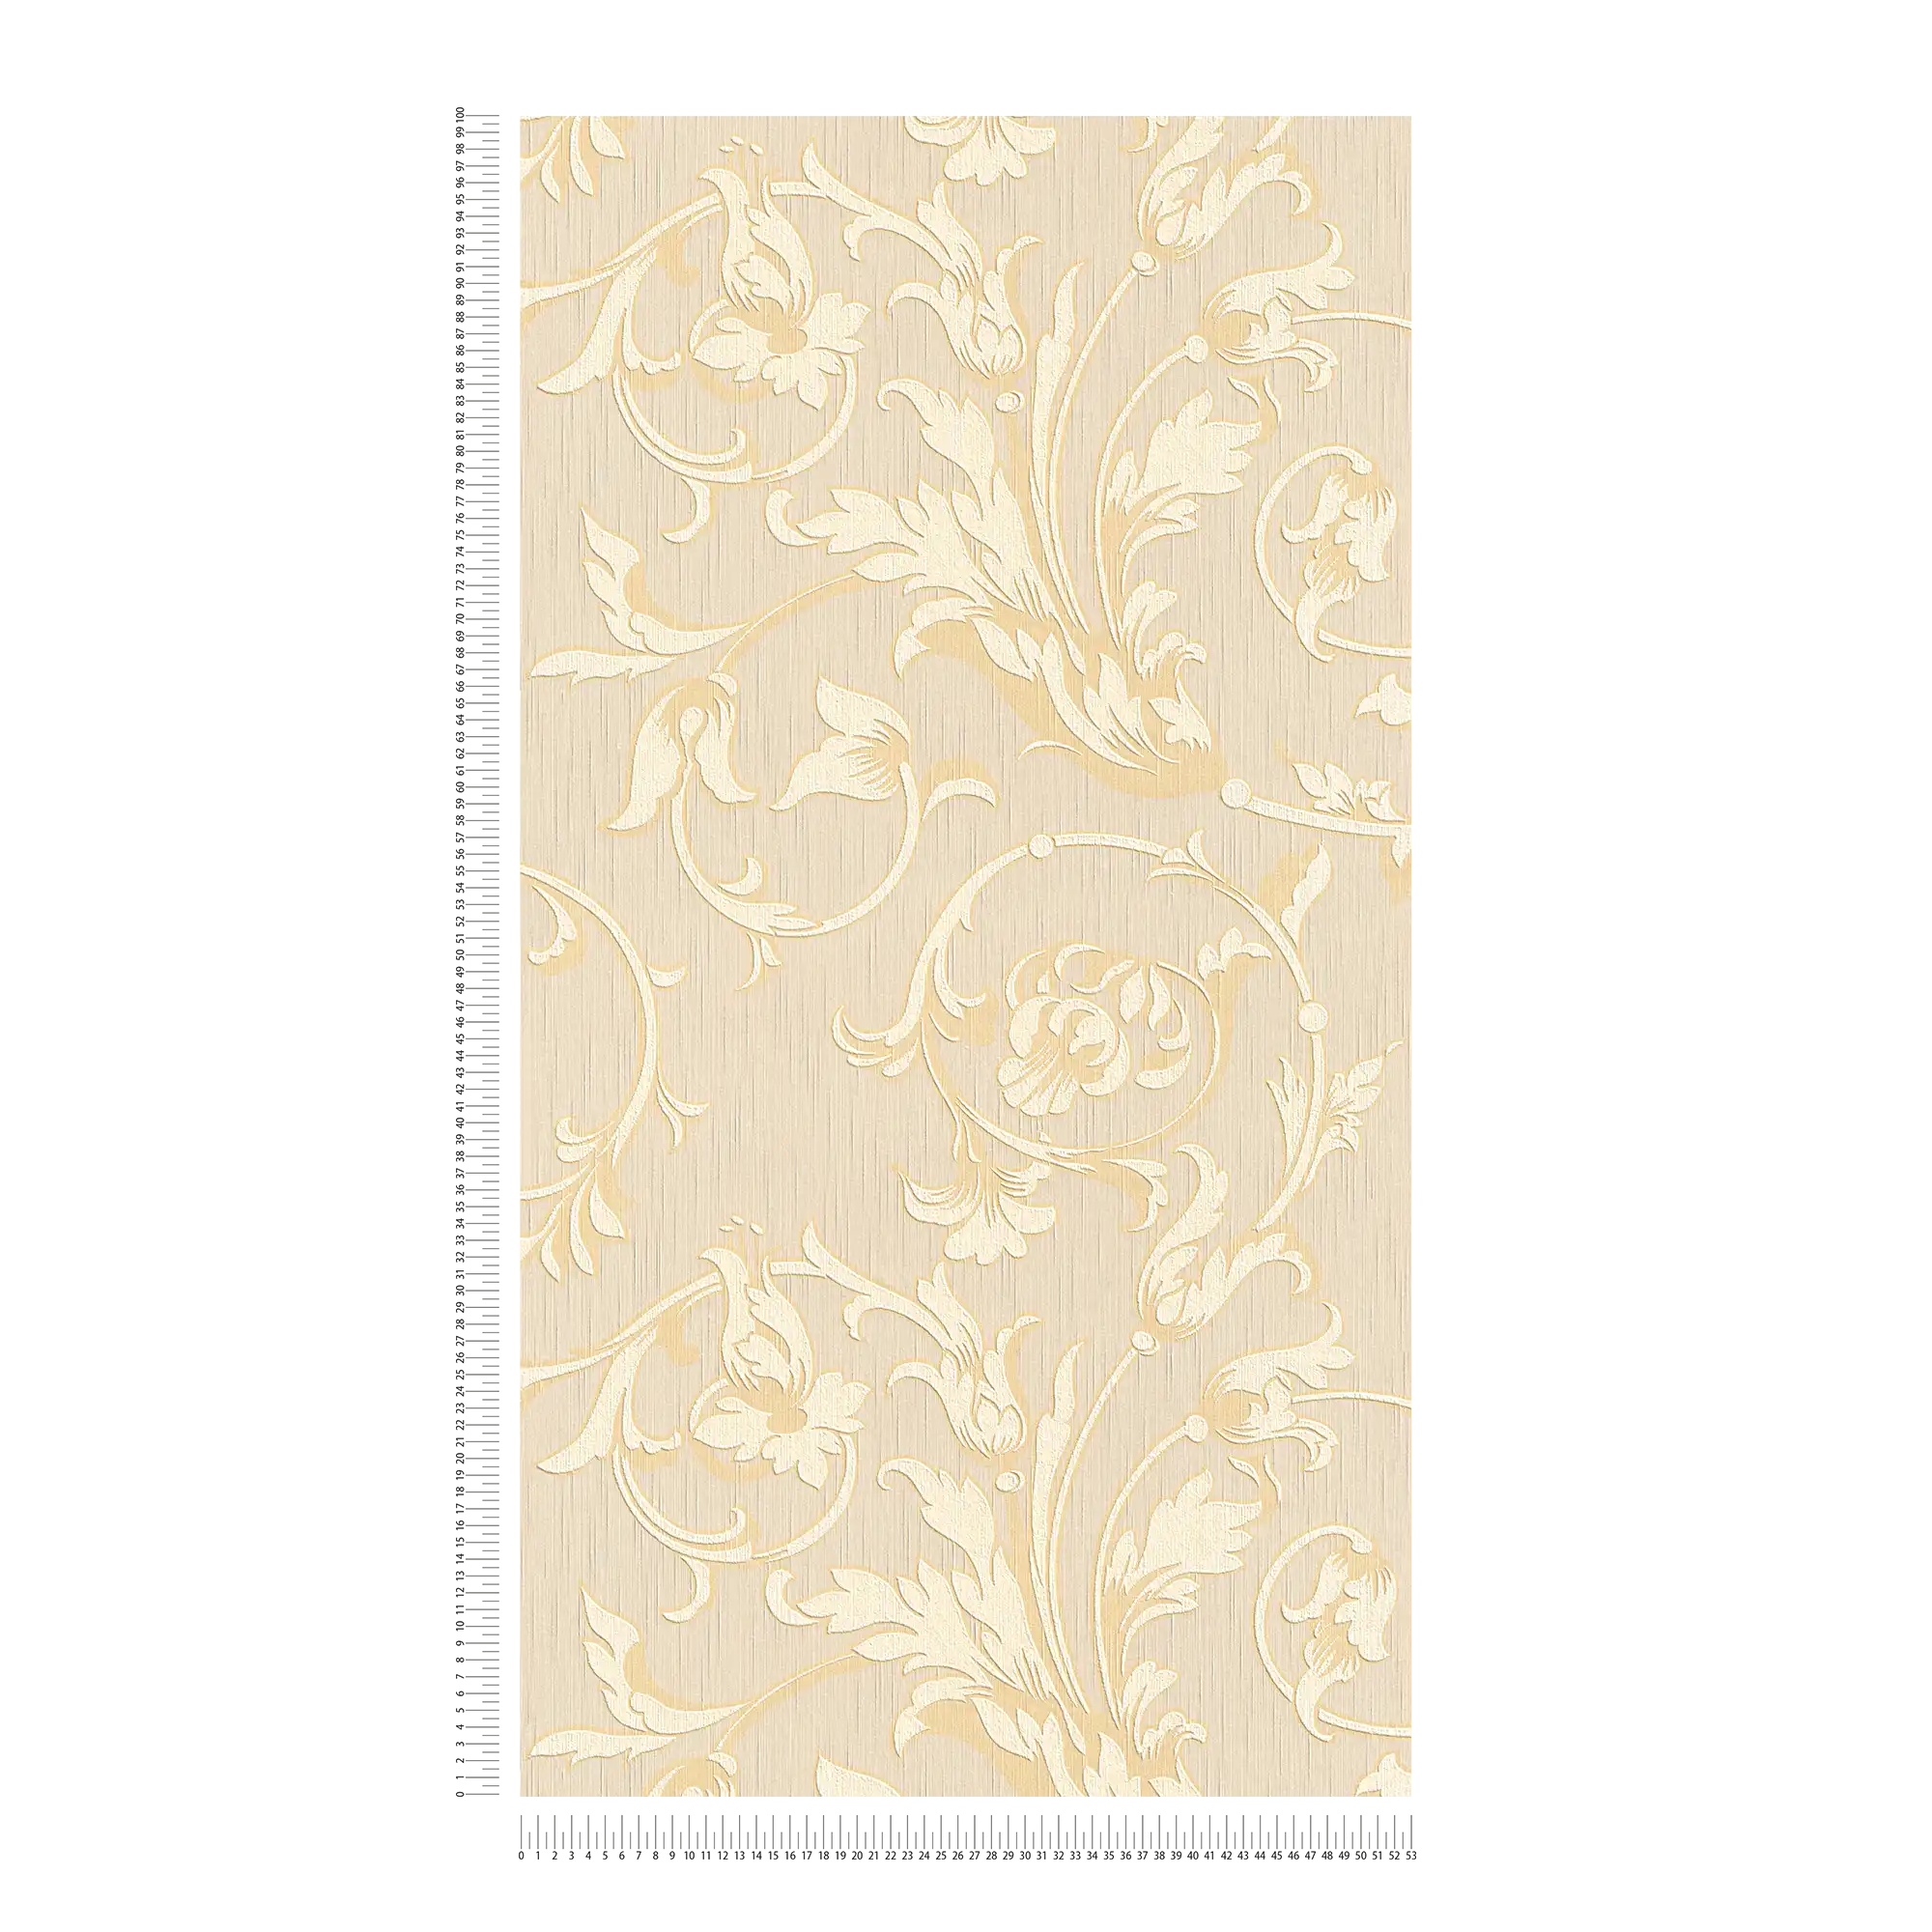             Carta da parati ornamentale con effetto seta - crema, oro, beige
        